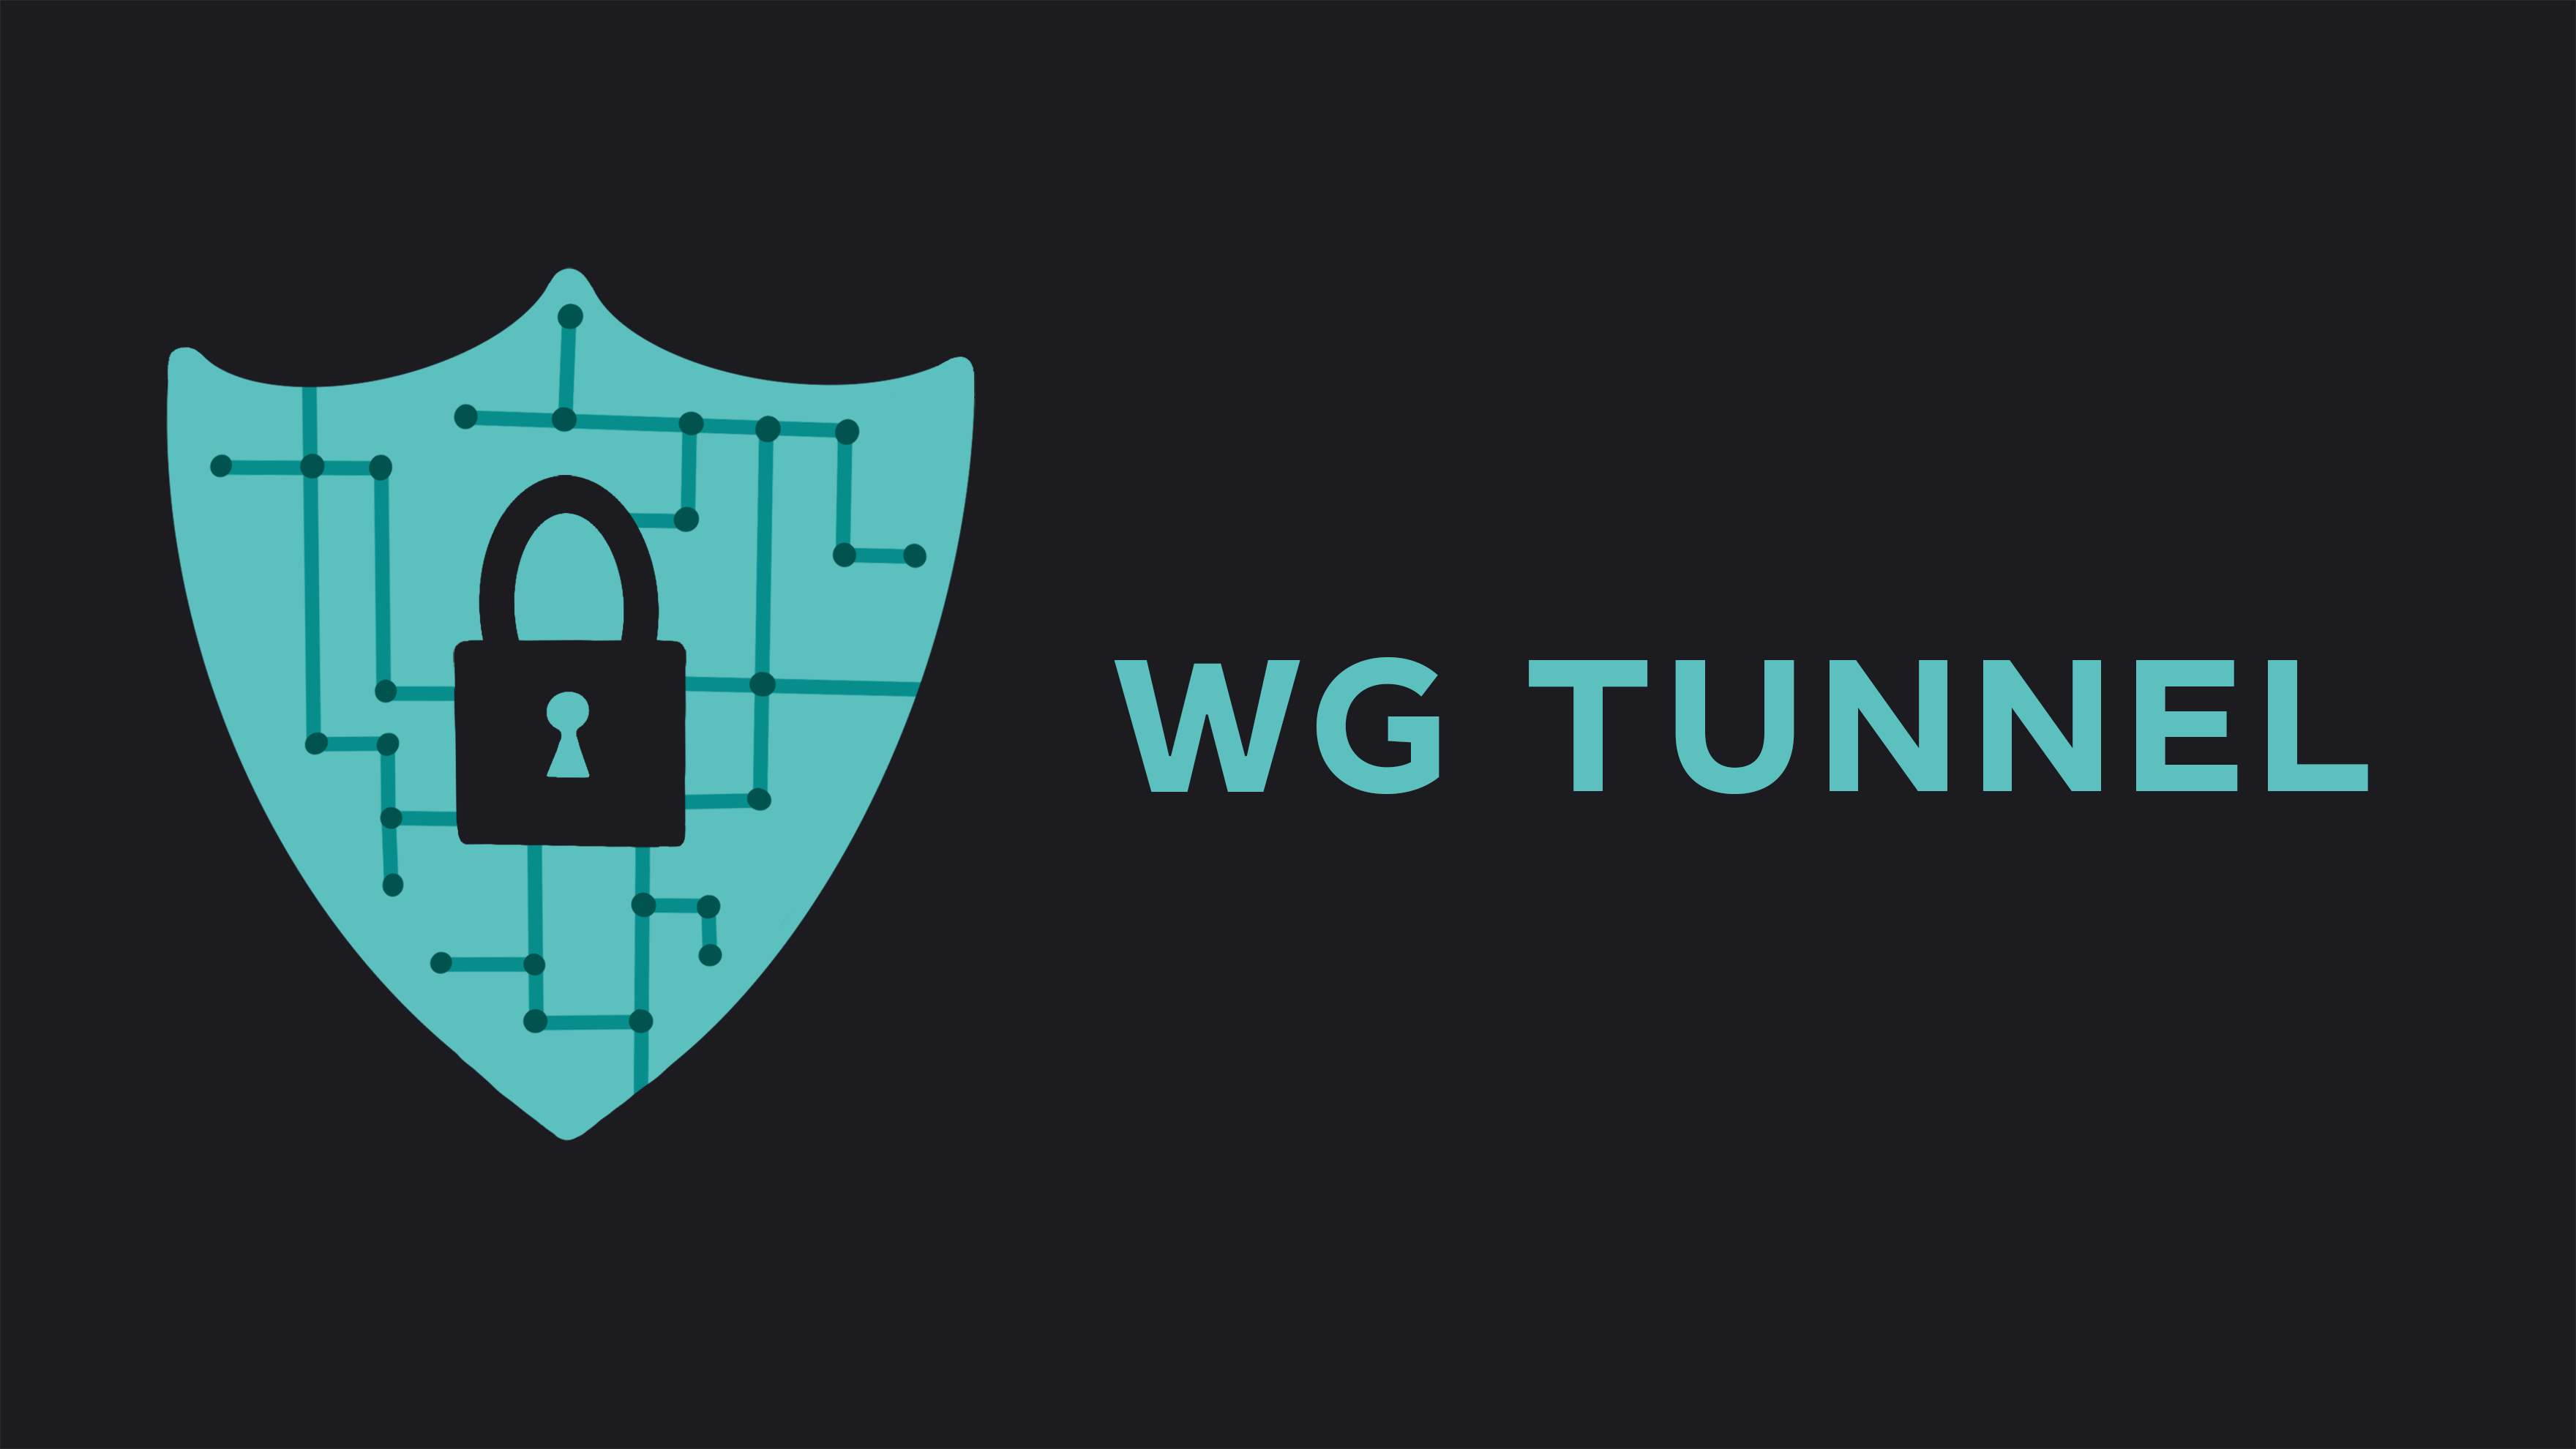 Wg tunnel Logo